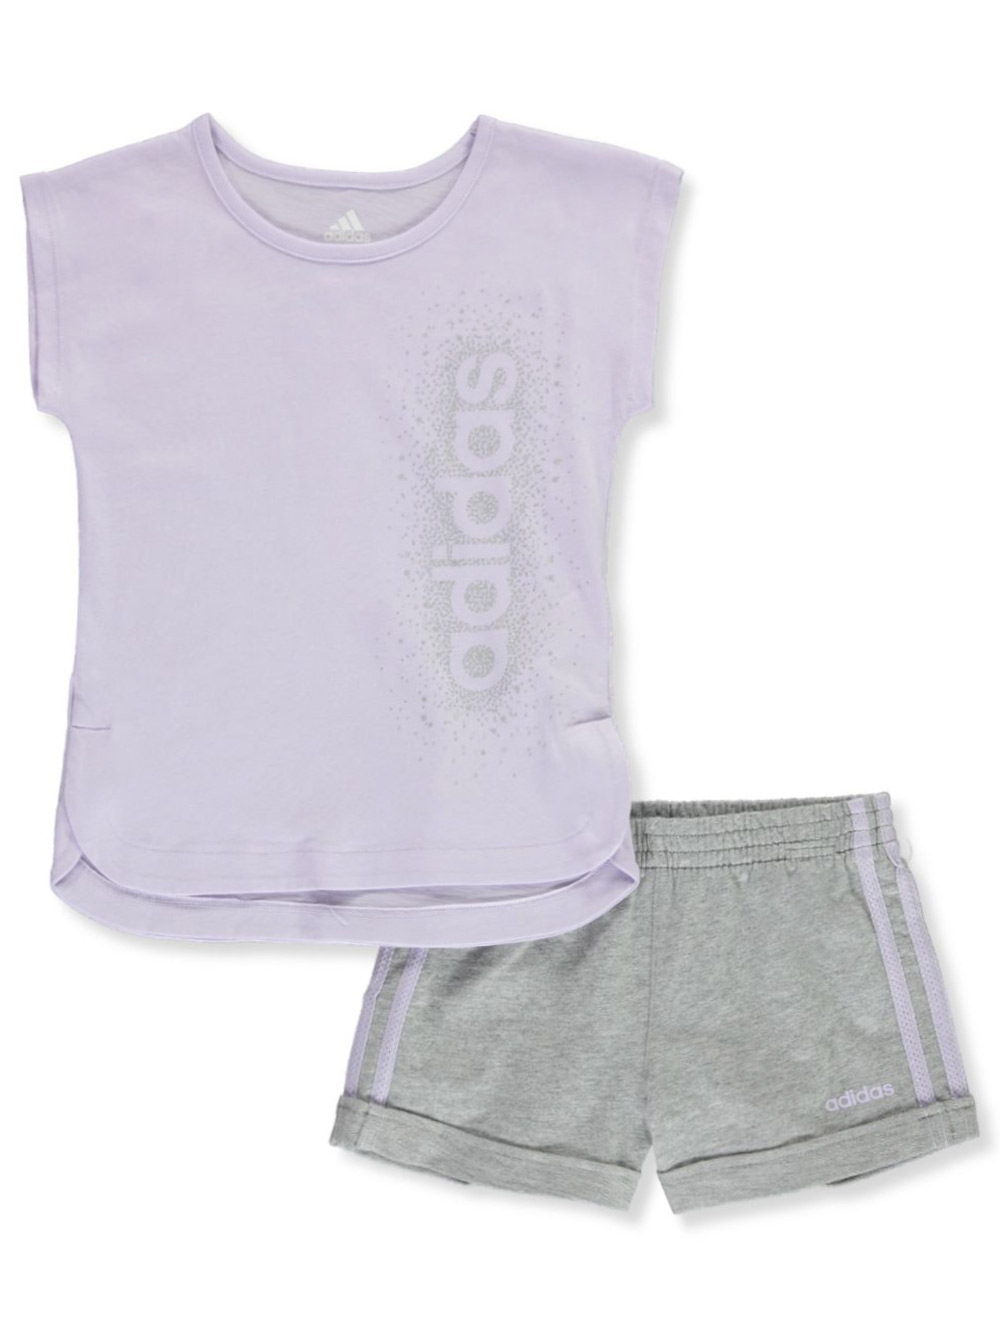 lilac adidas shorts